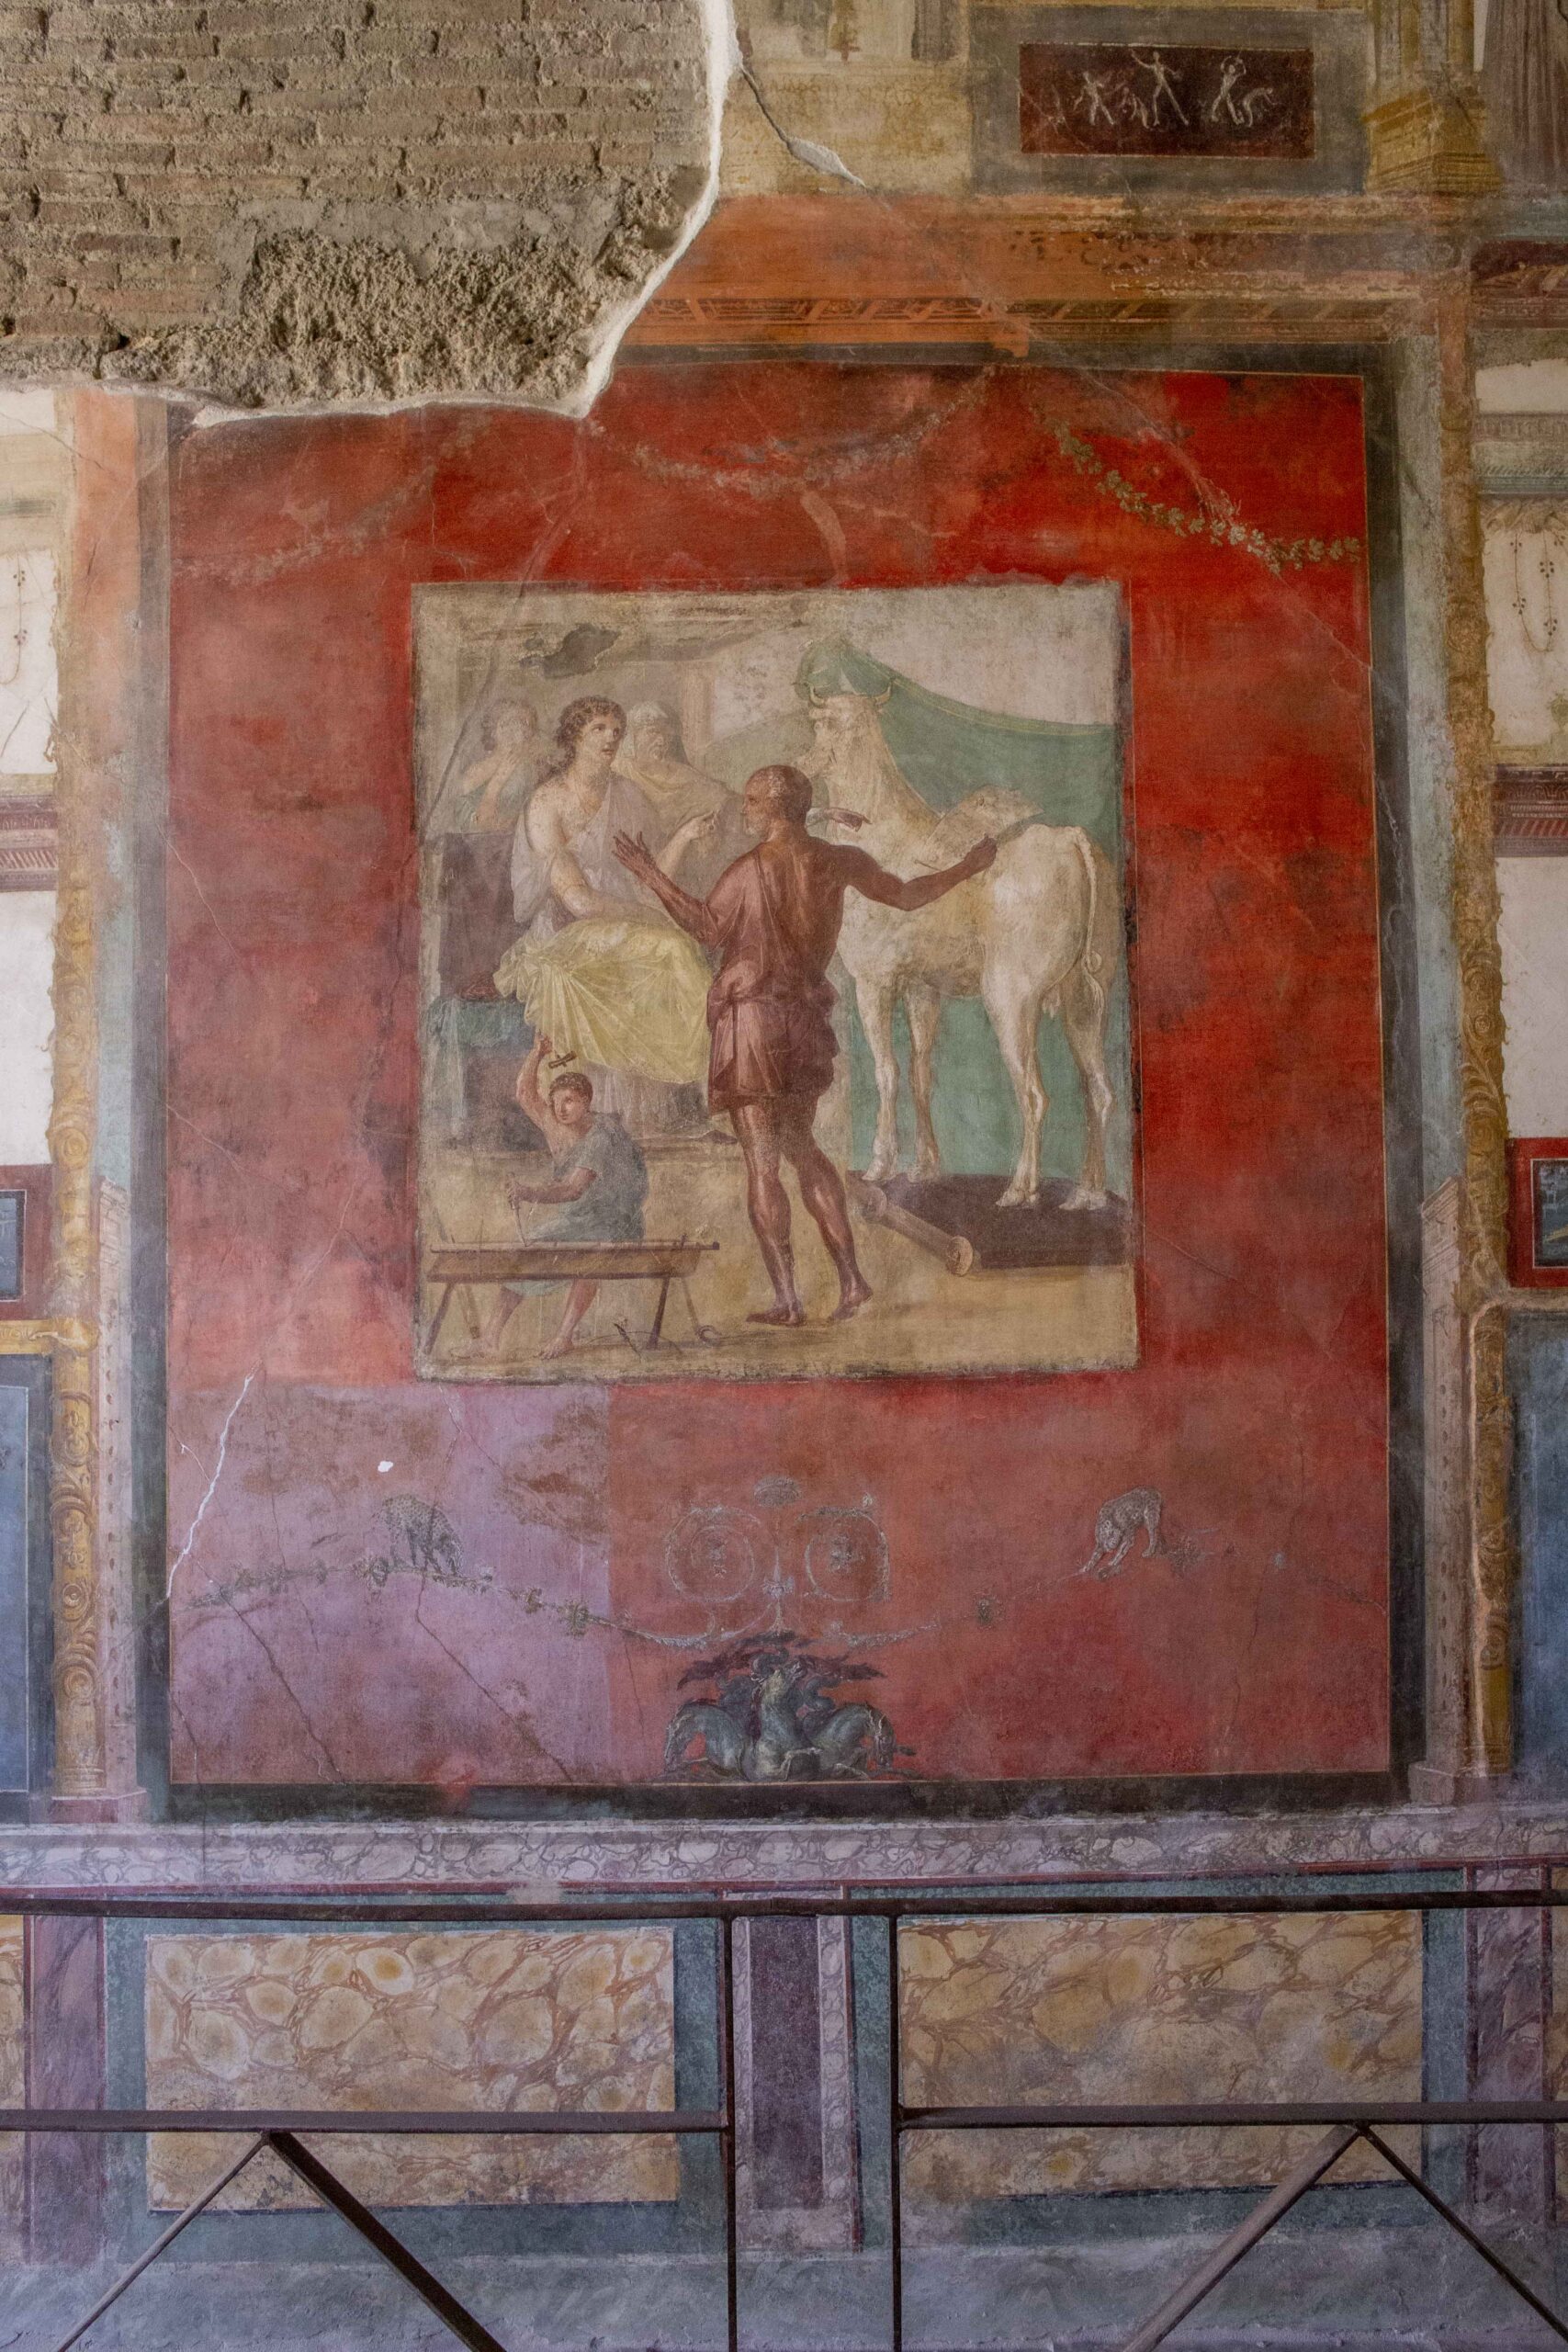 Eterna Pompeii. Il restauro della casa dei Vettii